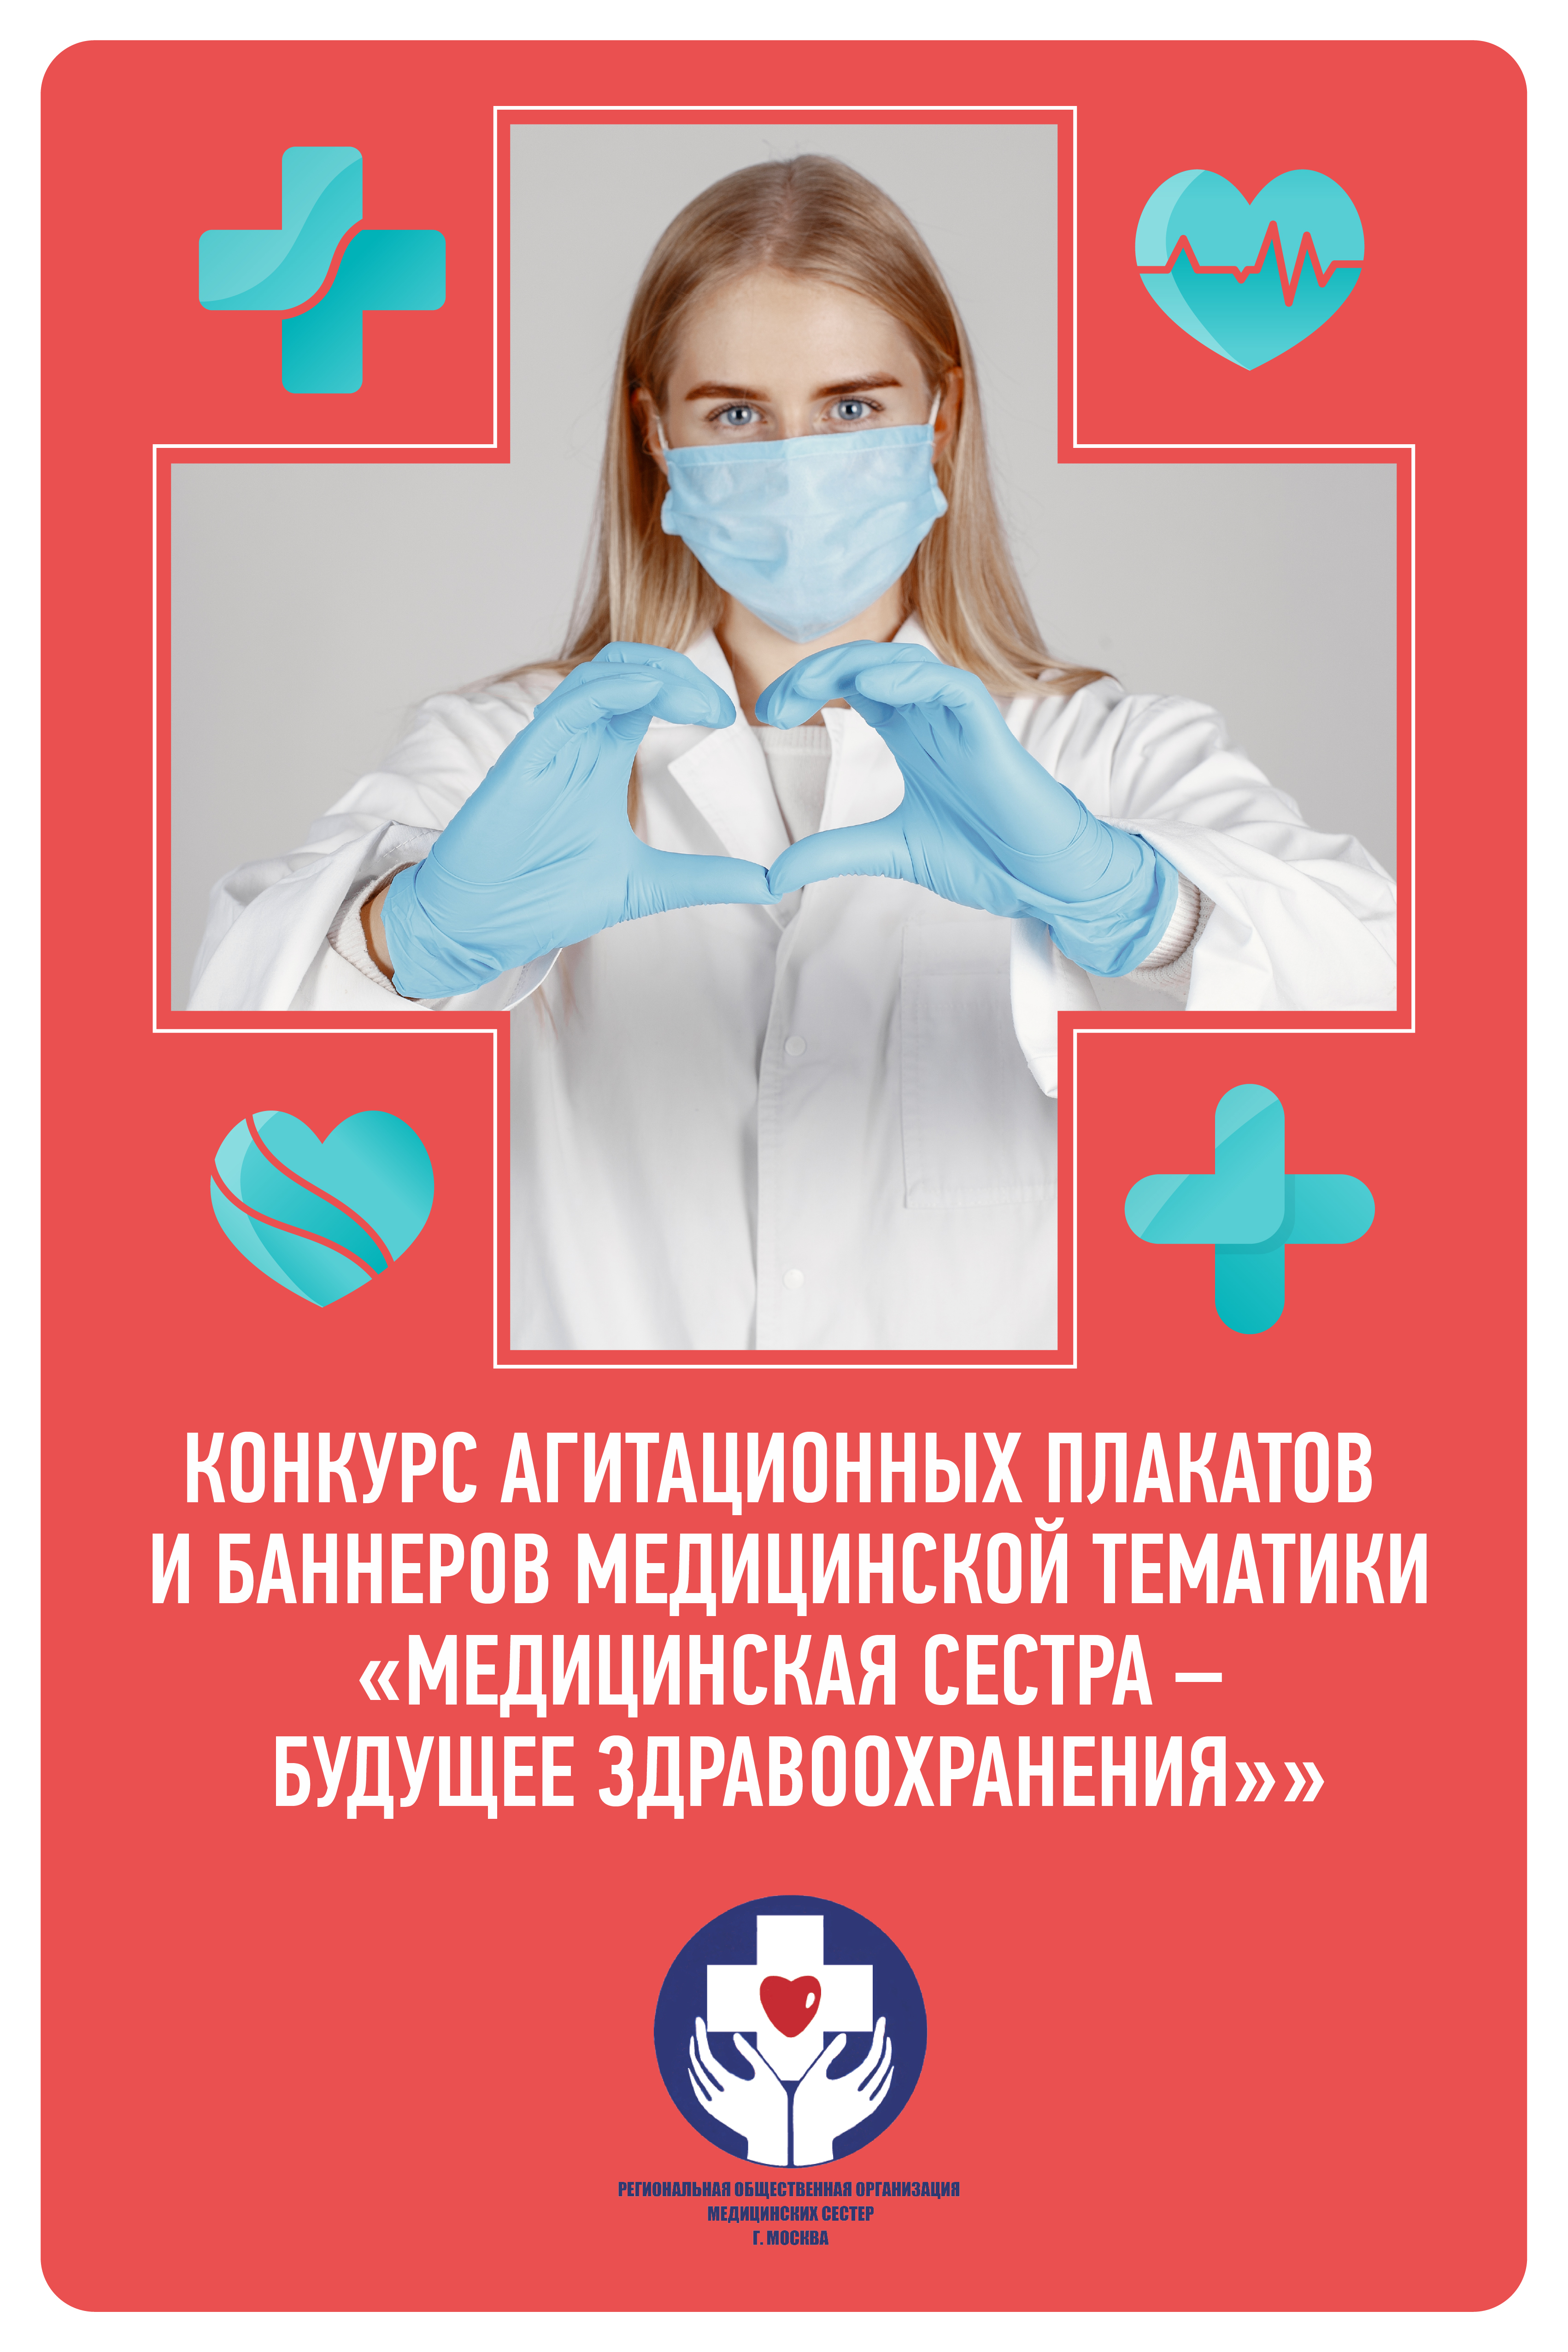 Конкурс агитационных плакатов и баннеров «Медицинская сестра – будущее здравоохранения»